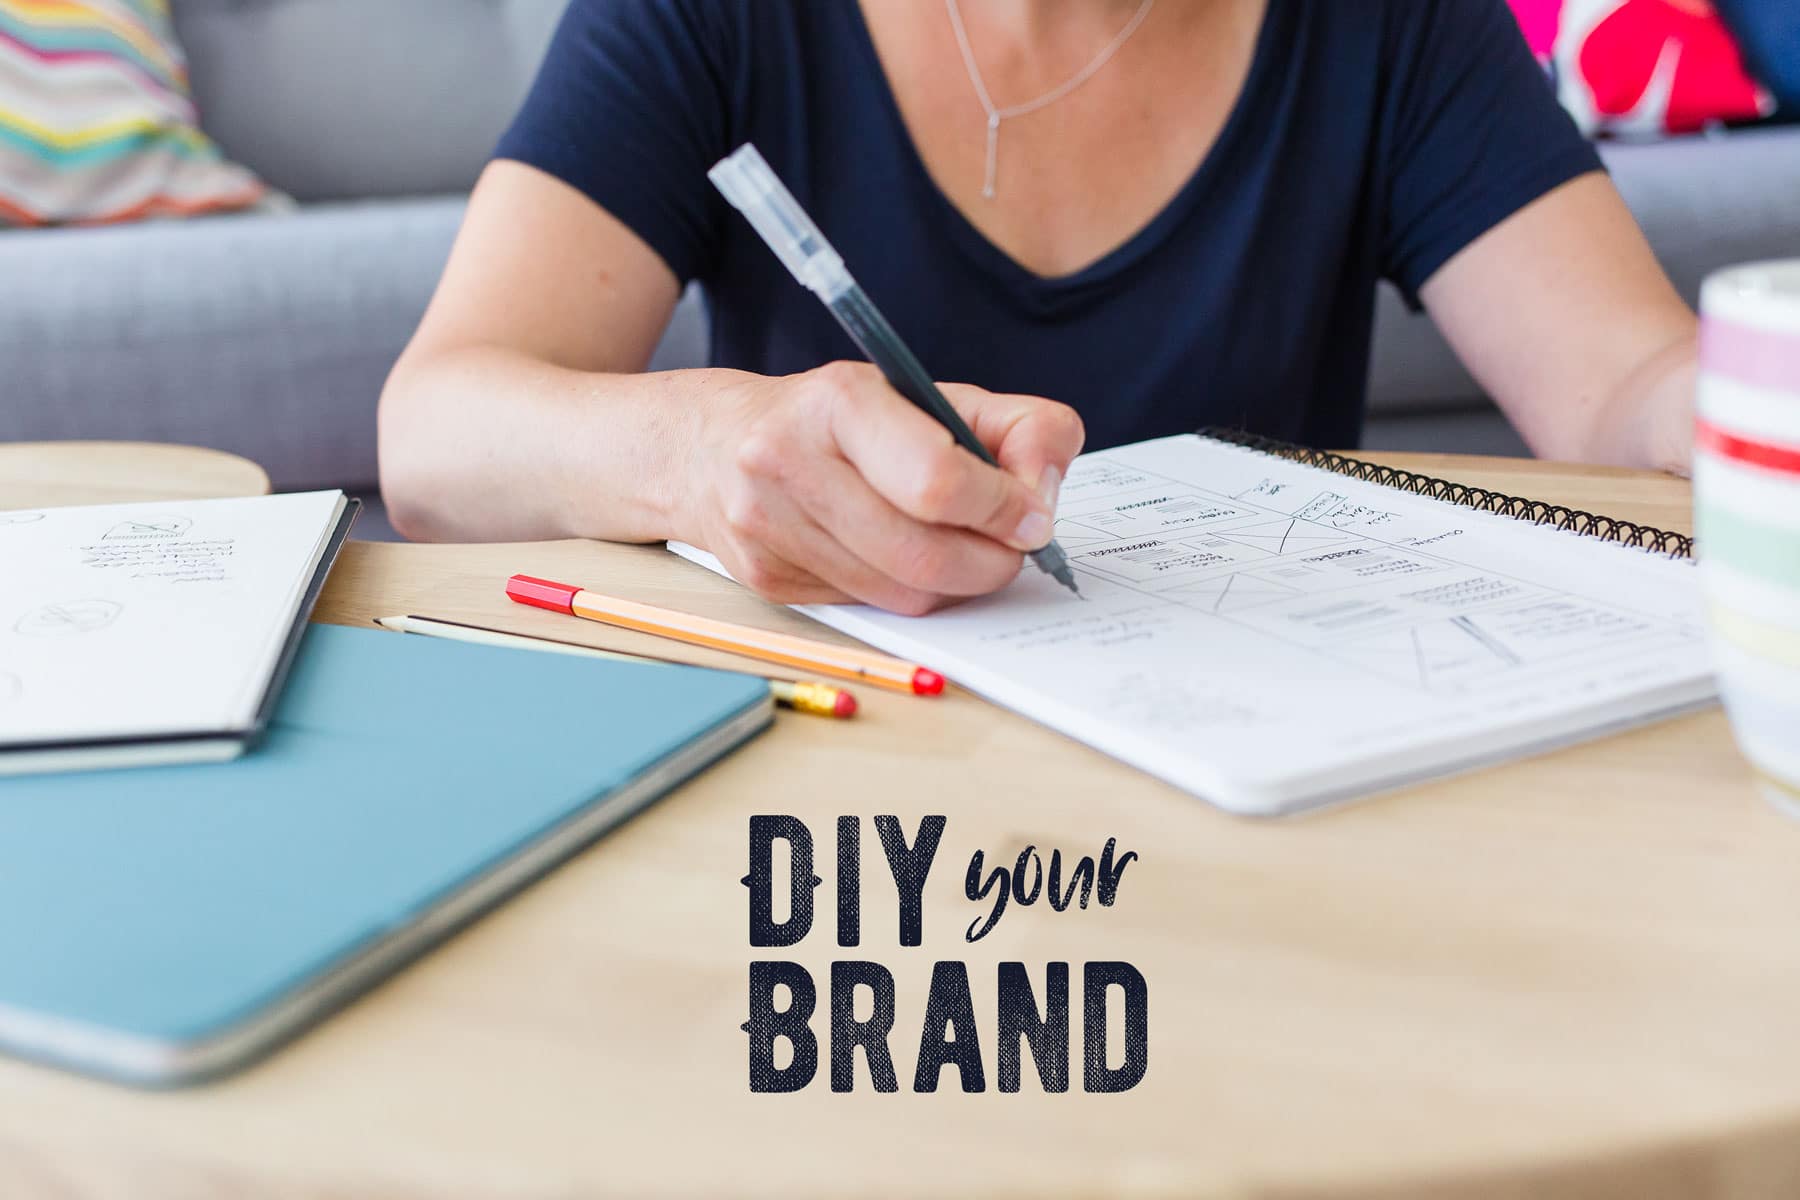 DIY Brand Vs Using an Expert – An Honest Comparison